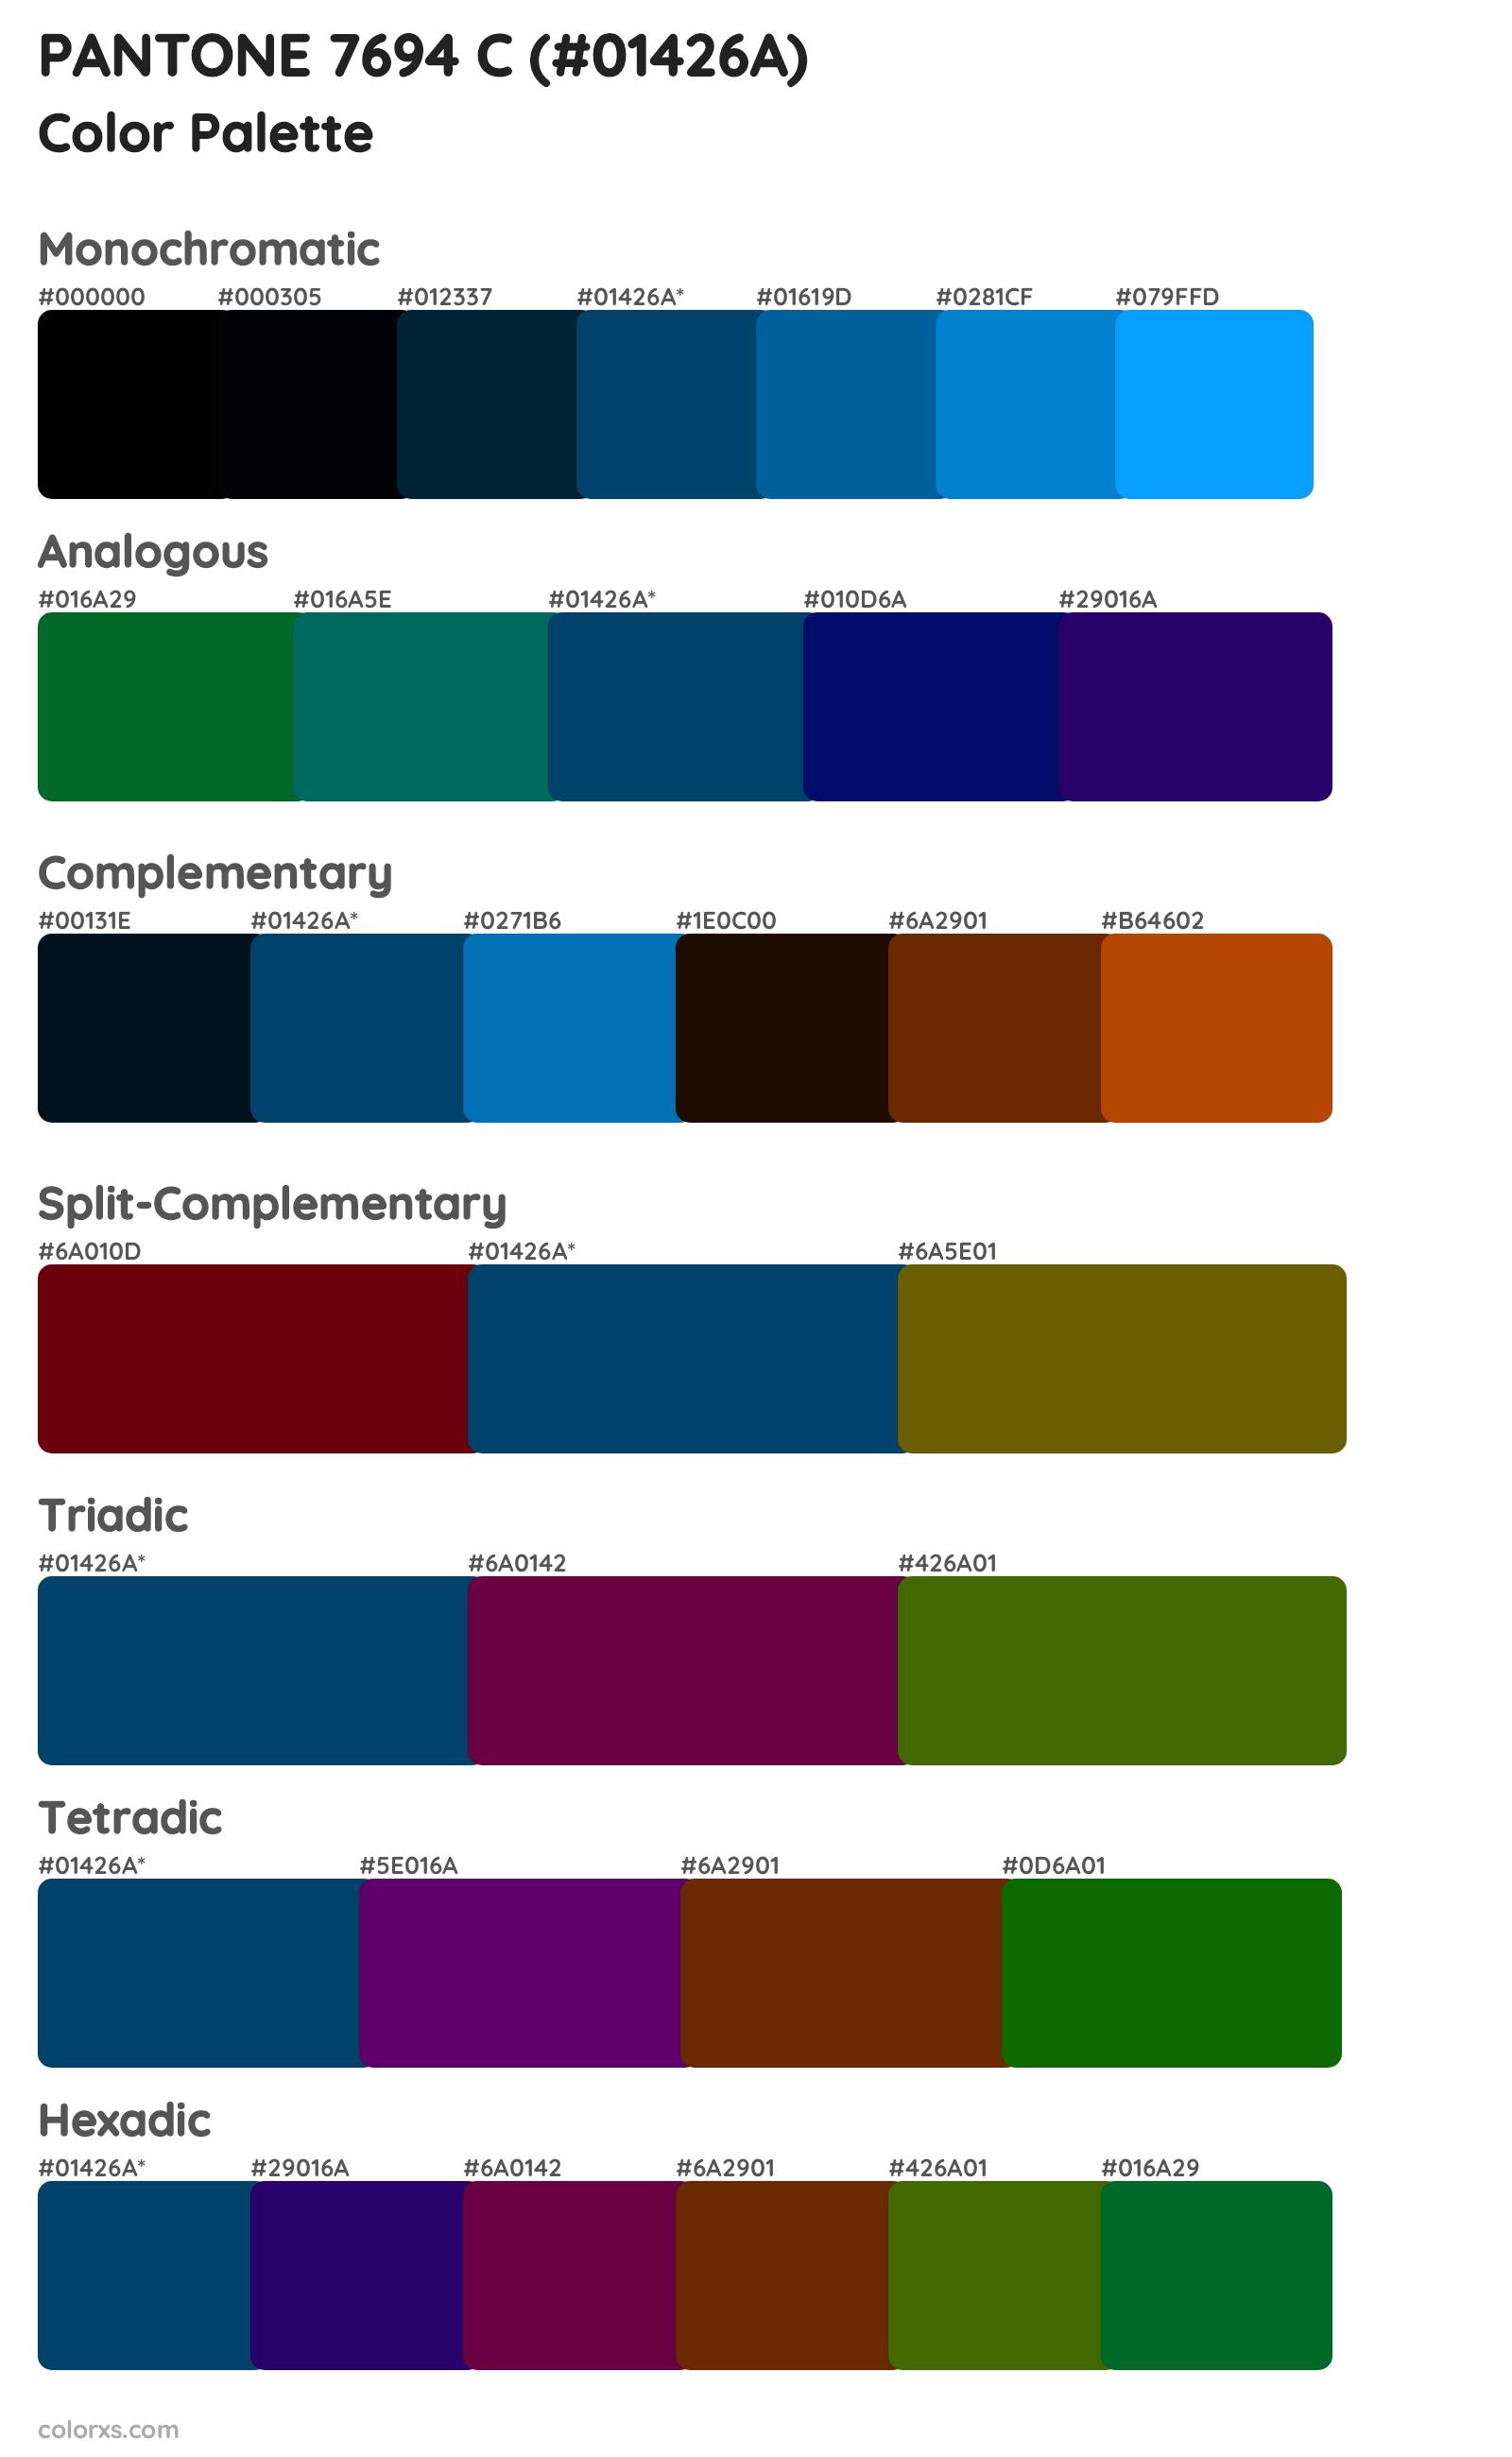 PANTONE 7694 C Color Scheme Palettes